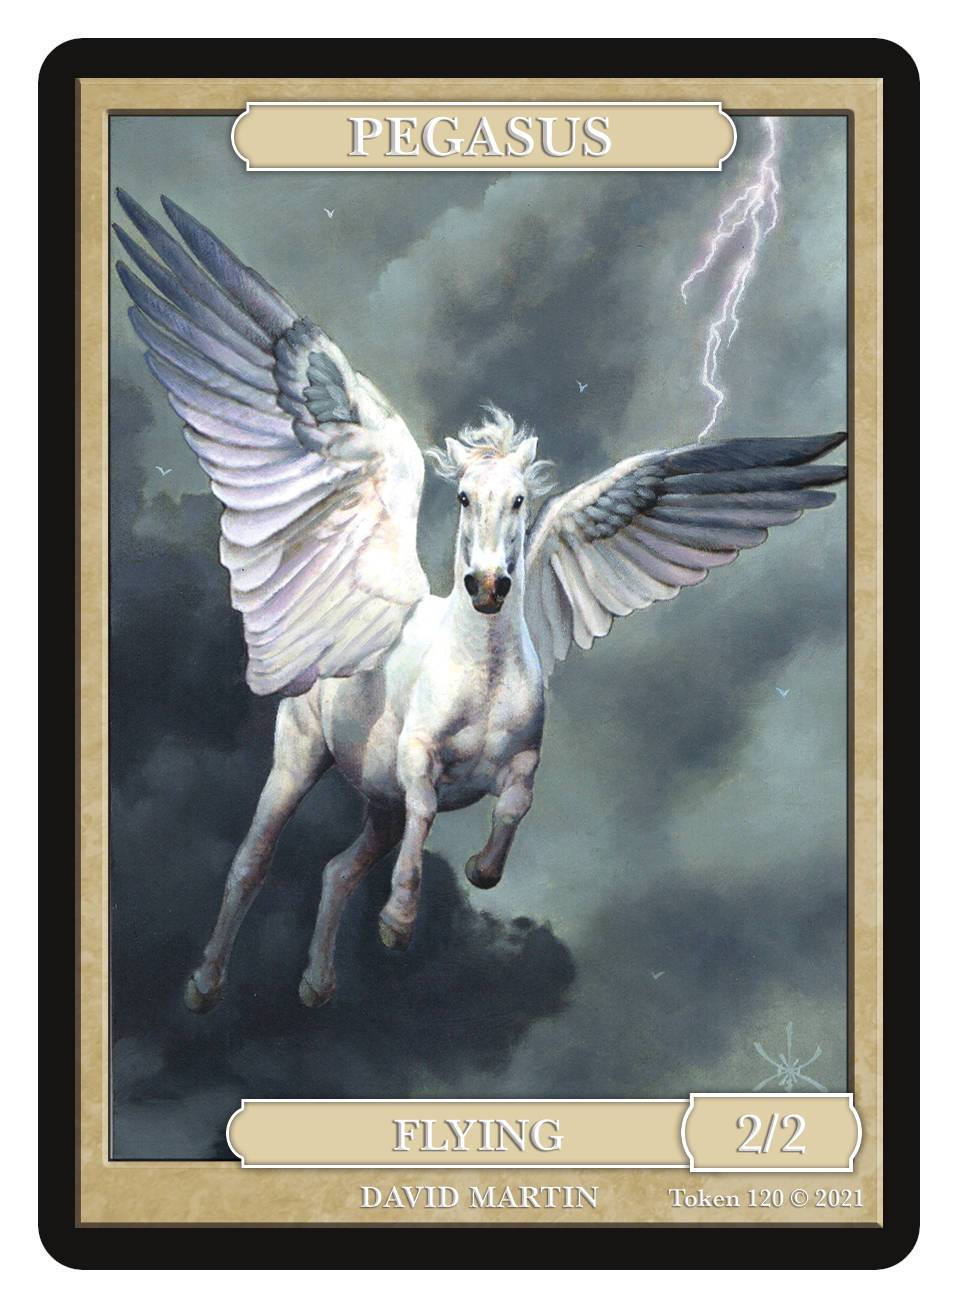 Pegasus Token (2/2 - Flying) by David Martin